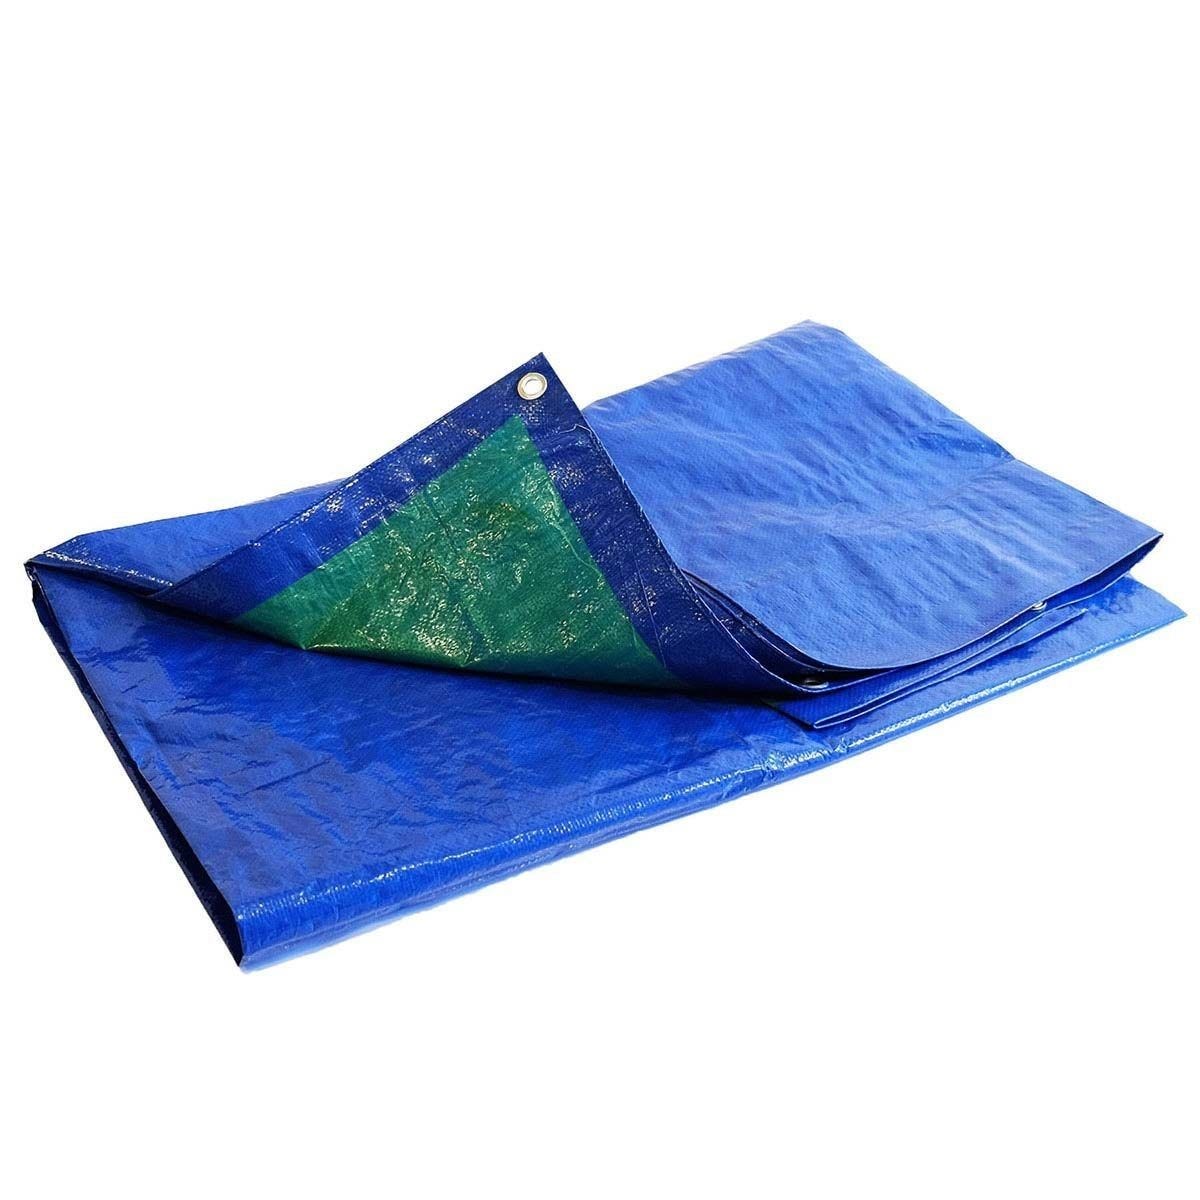 Bâche Bois 8x12 m - TECPLAST 150BO - Bleue et Verte - Haute Qualité - Bâche de protection imperméable pour Bois de chauffage 0